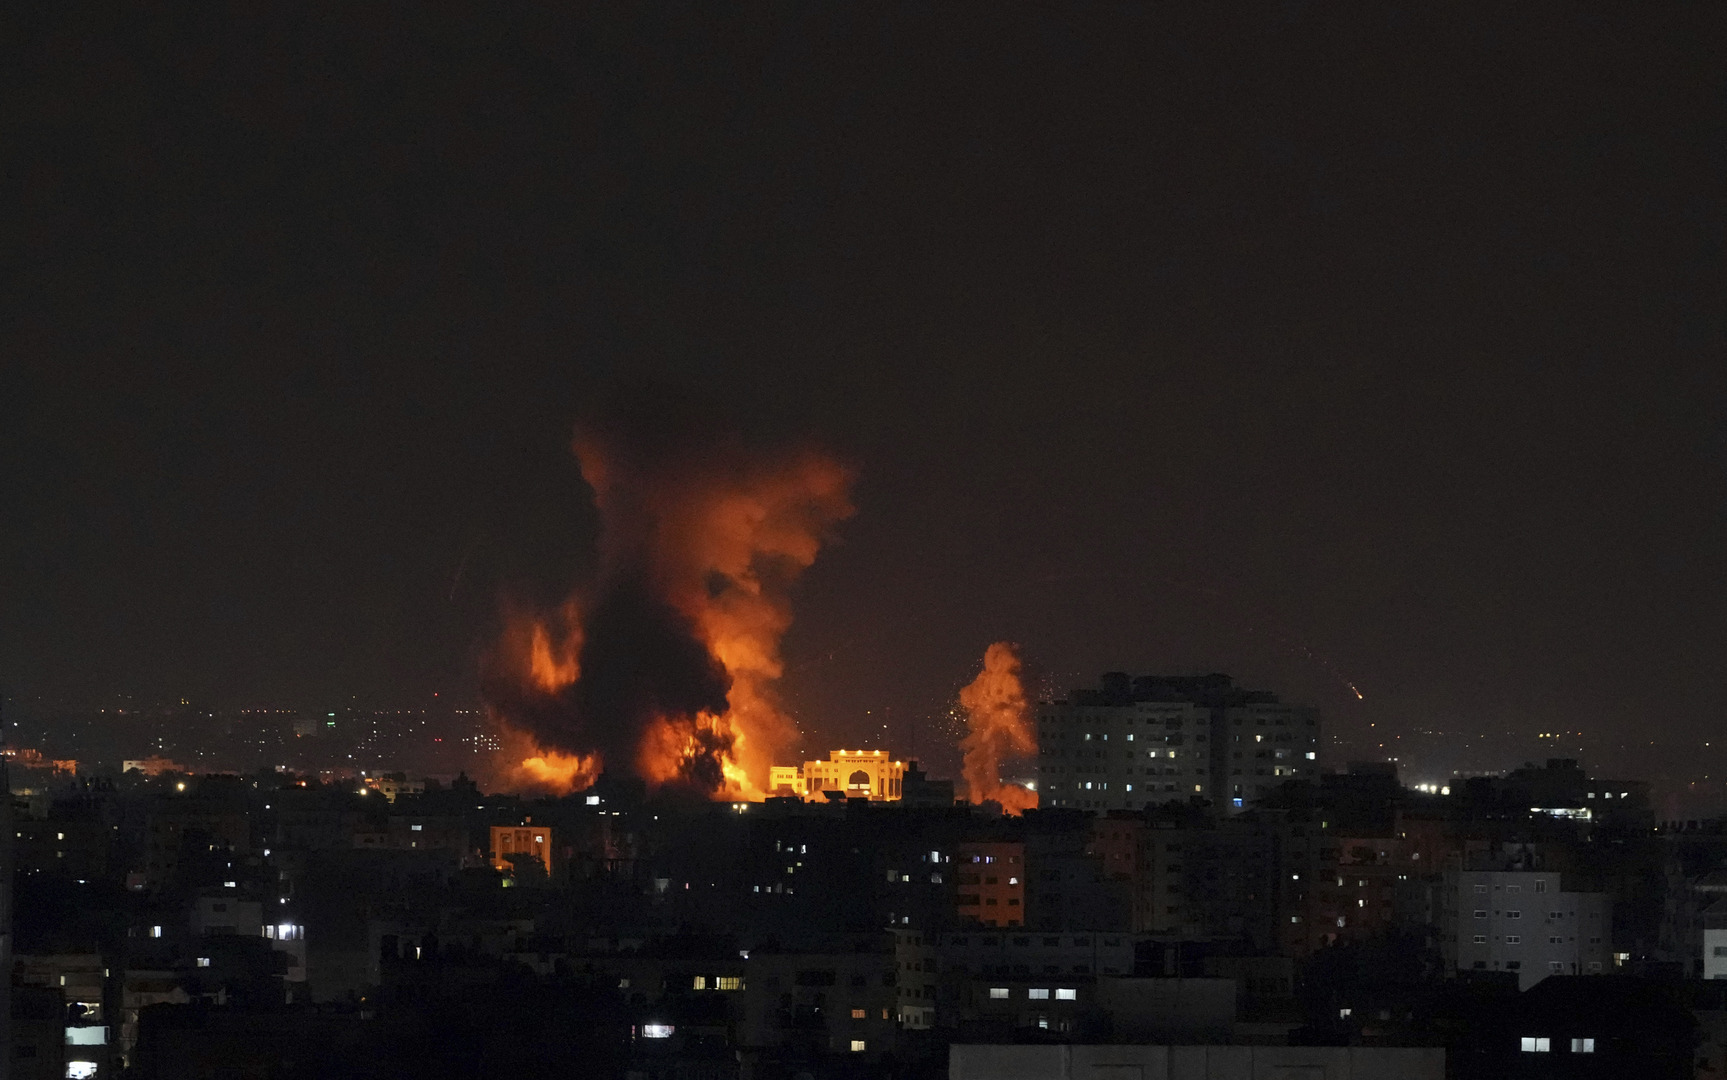 الجيش الإسرائيلي يعلن شن غارات على مواقع إطلاق صواريخ بغزة وغانتس يصادق على استدعاء قوات الاحتياط